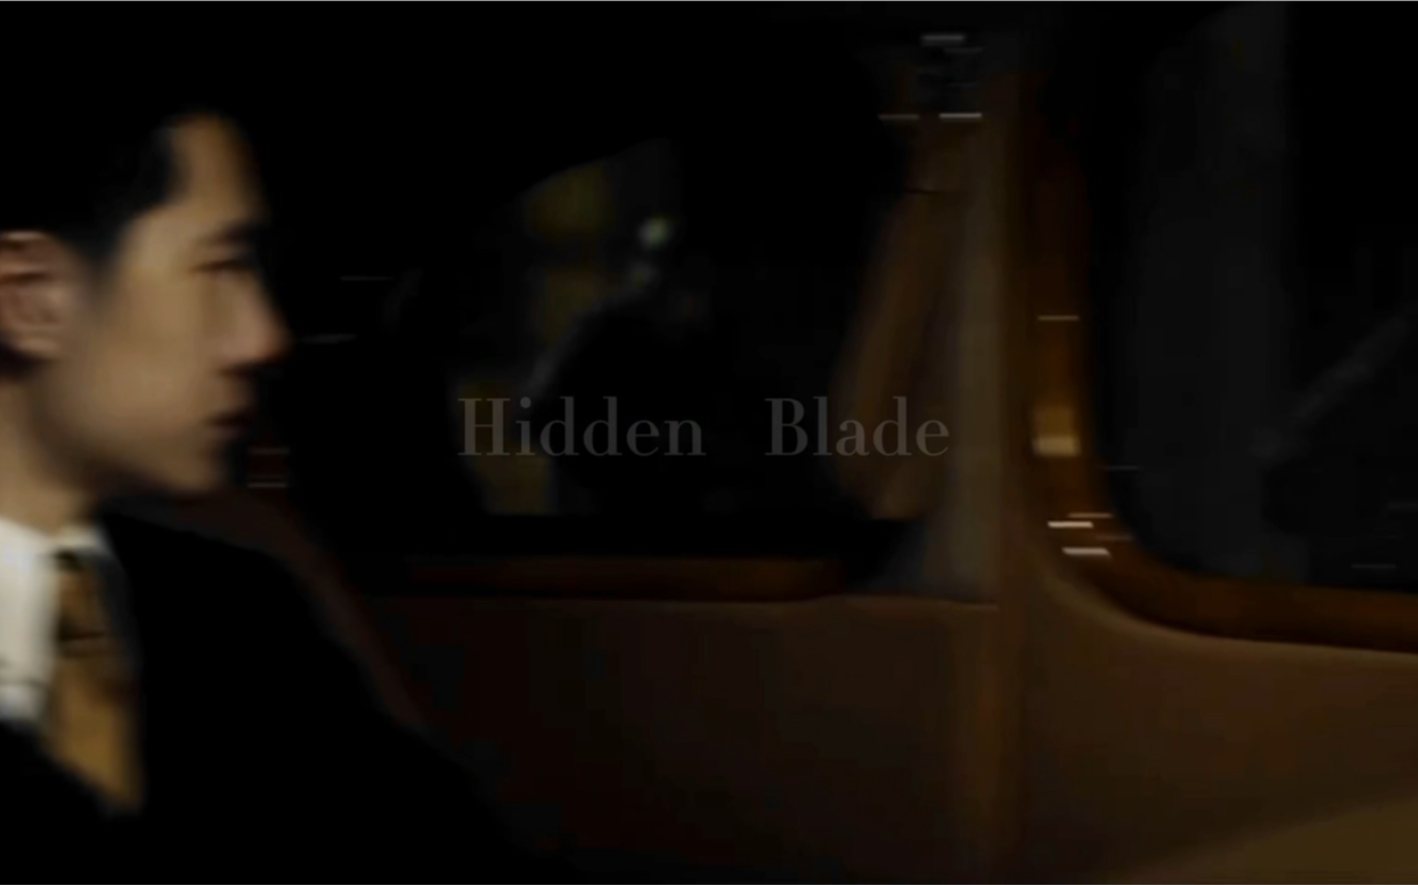 [图]Hidden Blade：无名者，是谓隐刃